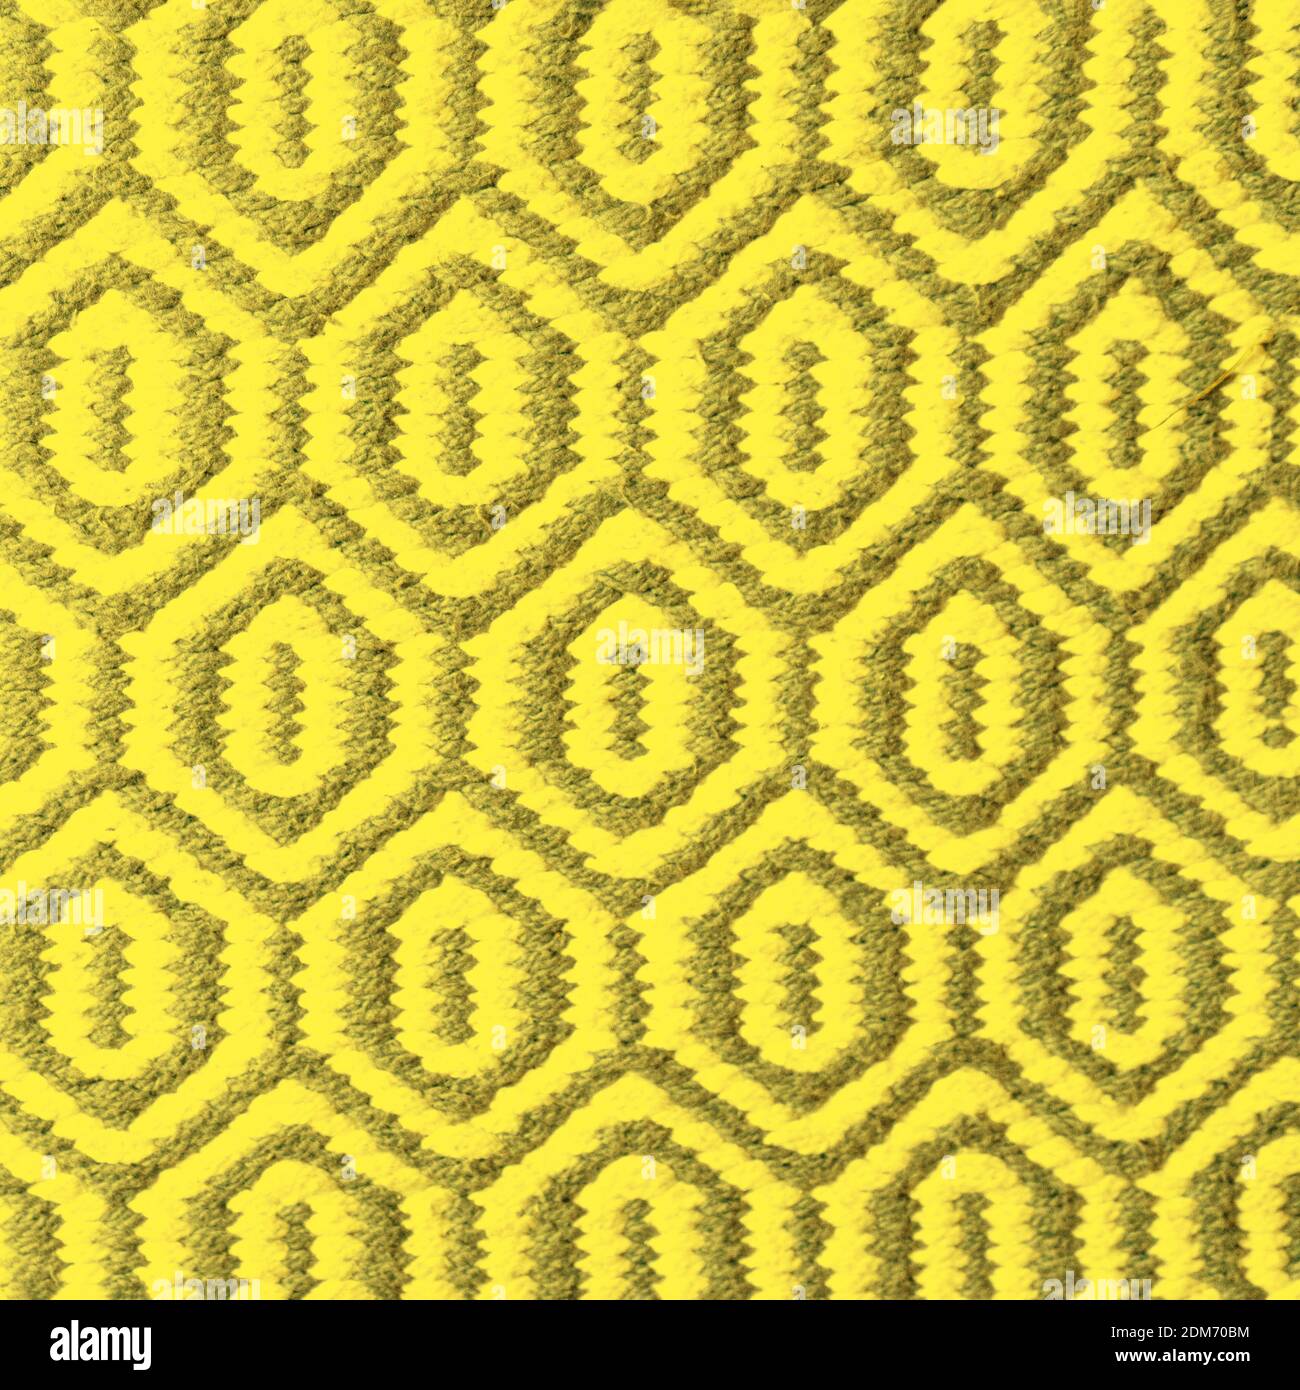 Helle IlluminatingGelb und Grau Wolle Teppich Textur Hintergrund. Konzept der Farbe des Jahres 2021 mit hellen leuchtenden Gelb- und Grautönen. Draufsicht, flach liegend, Kopierbereich. Stockfoto